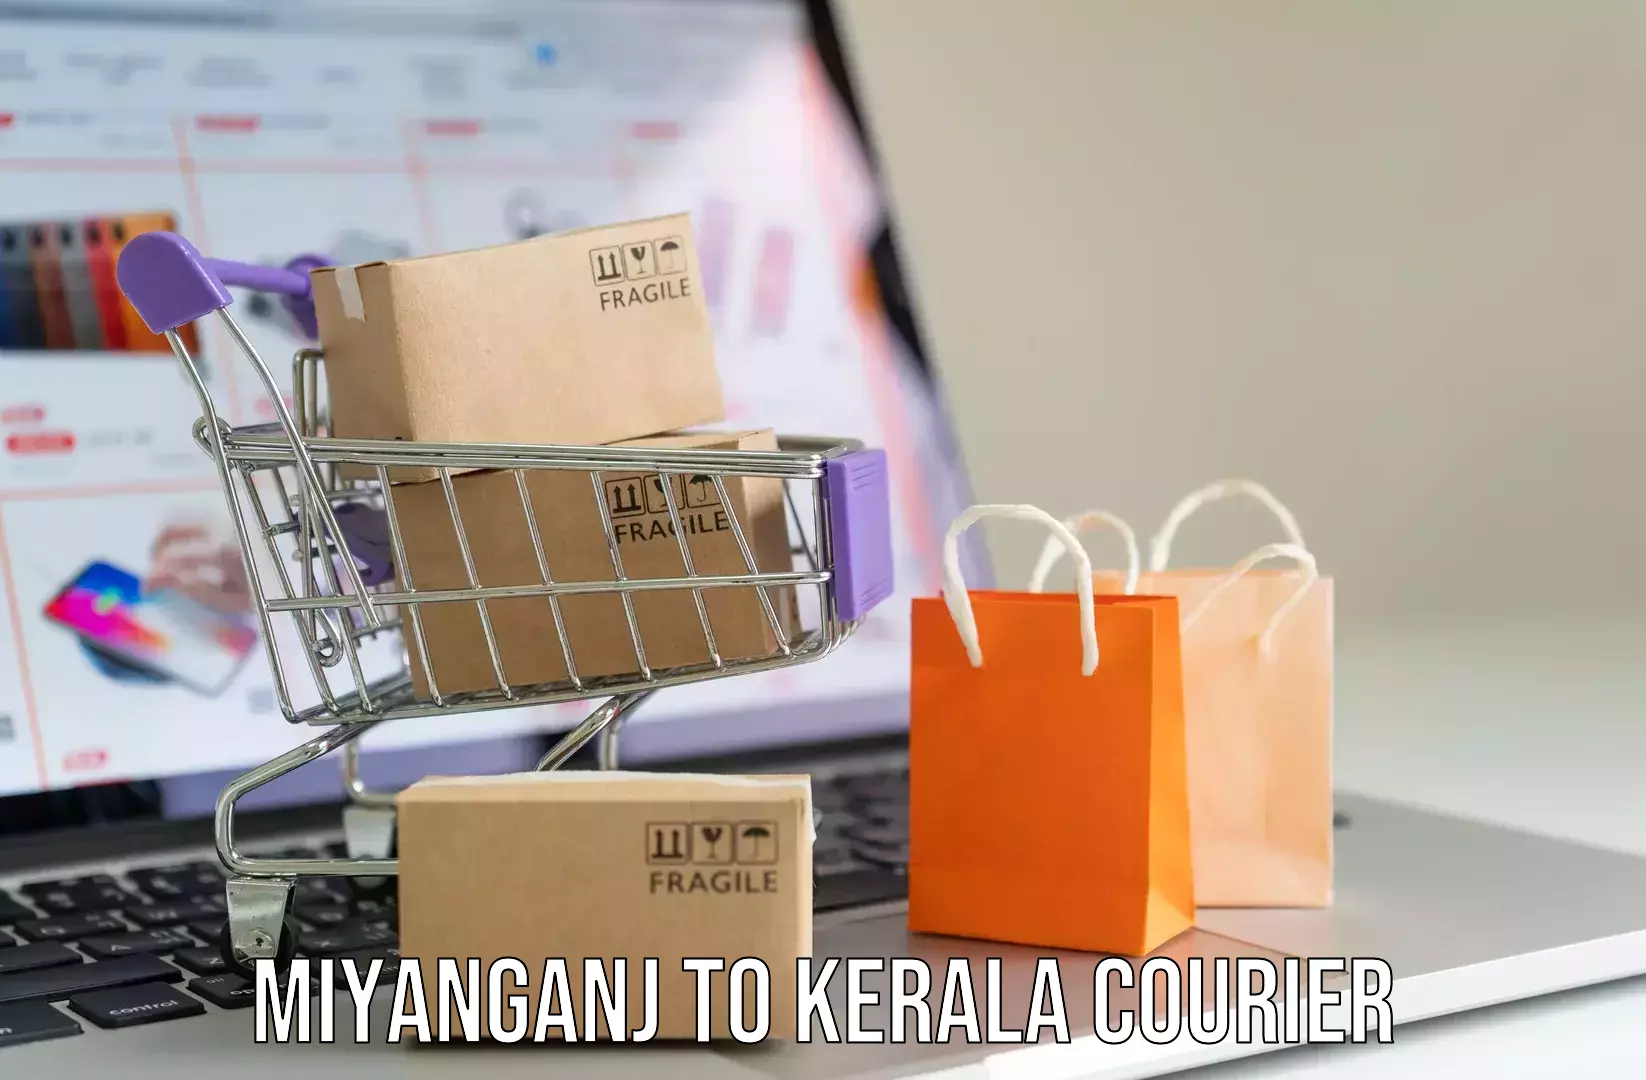 Door-to-door baggage service Miyanganj to Kalanjoor